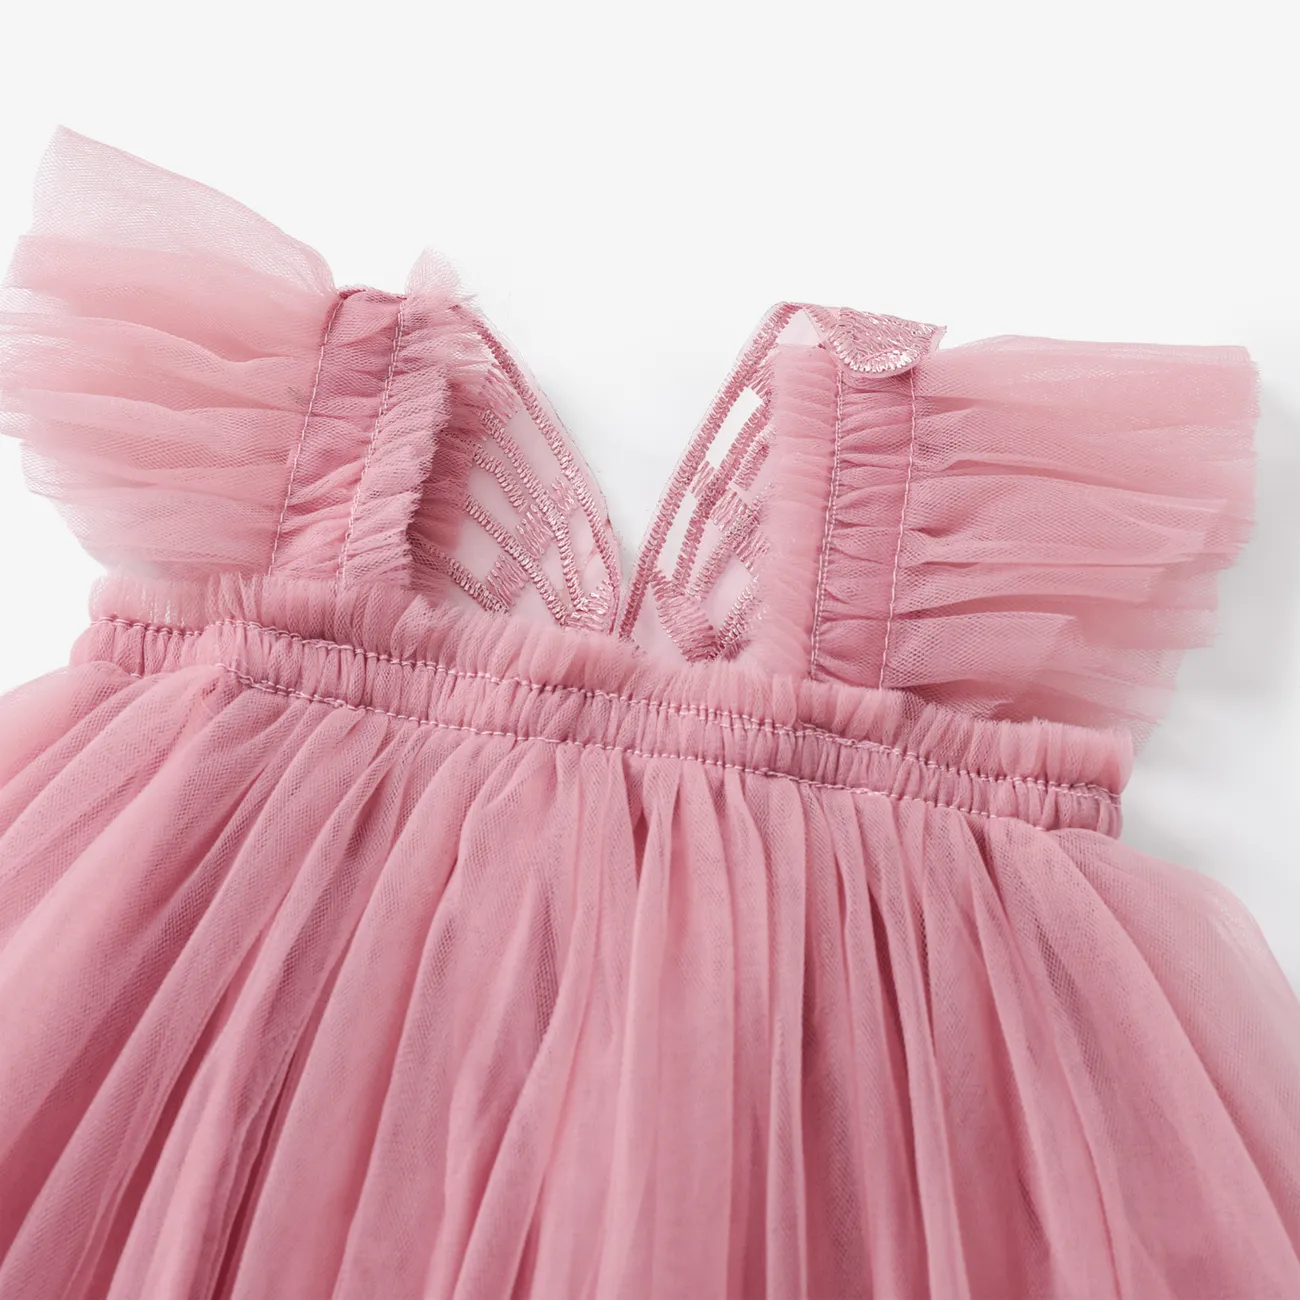 嬰兒/兒童女孩甜美超觸覺 3D 蝴蝶結印花連衣裙 粉色 big image 1